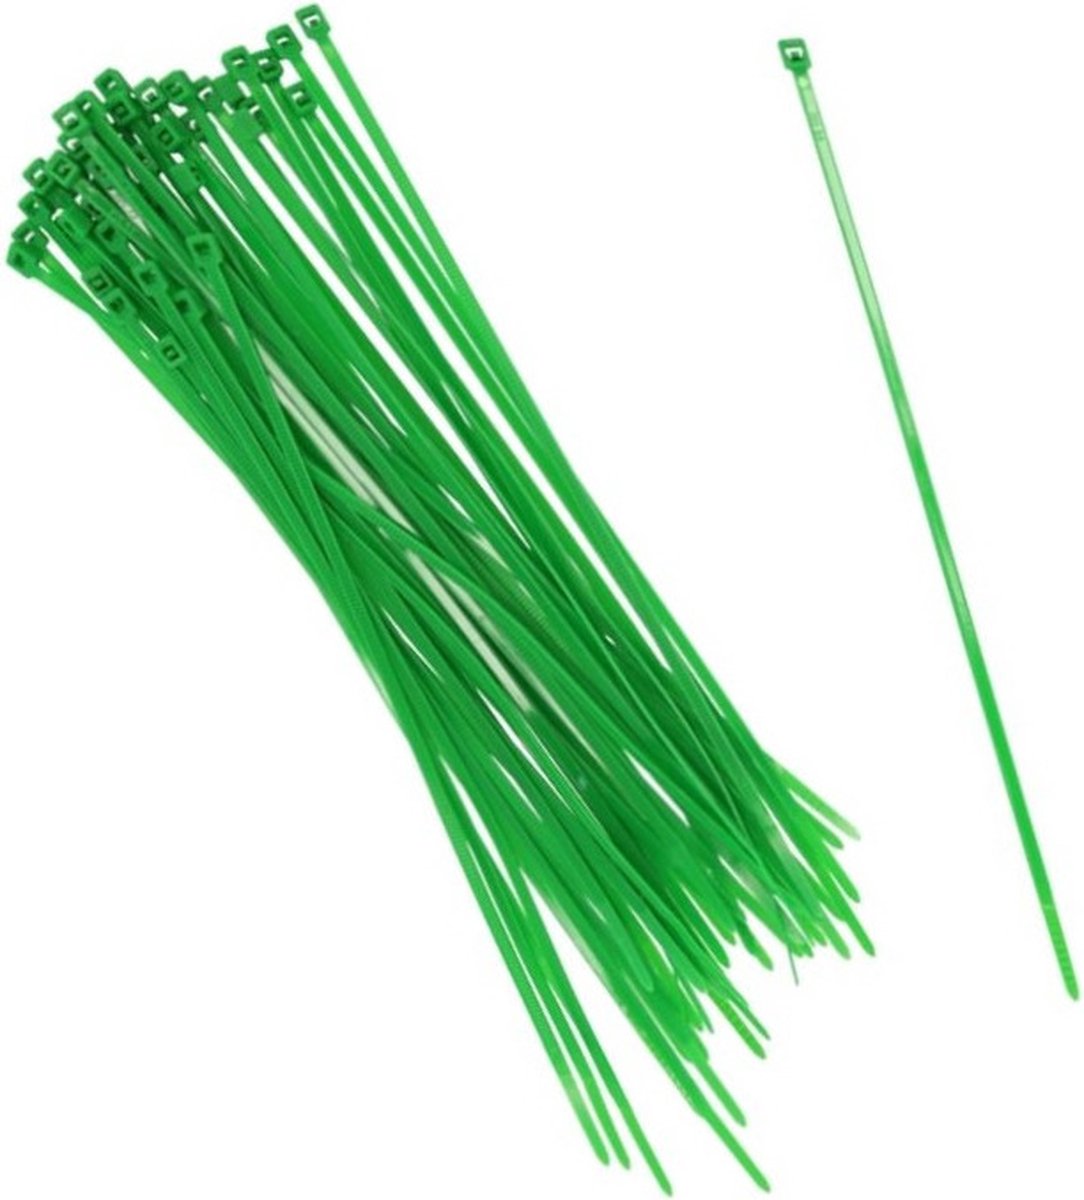 50x stuks Kabelbinders tie-wraps in het groen van 10 cm gemaakt van kunststof - snoeren bindmateriaal